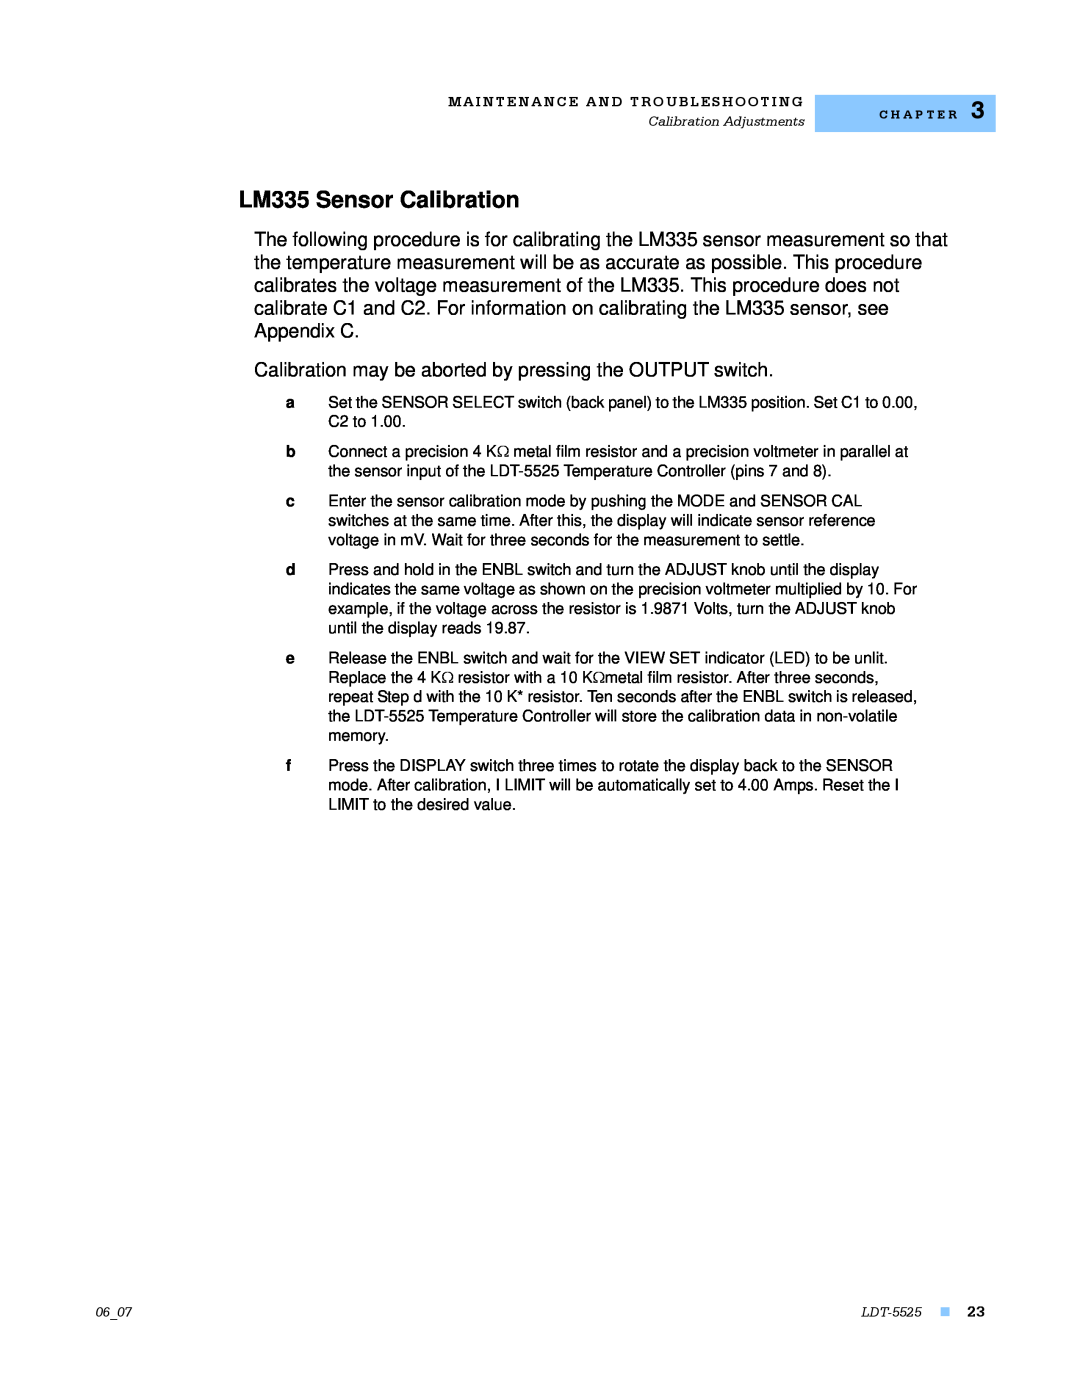 Lightwave Communications LDT-5525 manual LM335 Sensor Calibration 